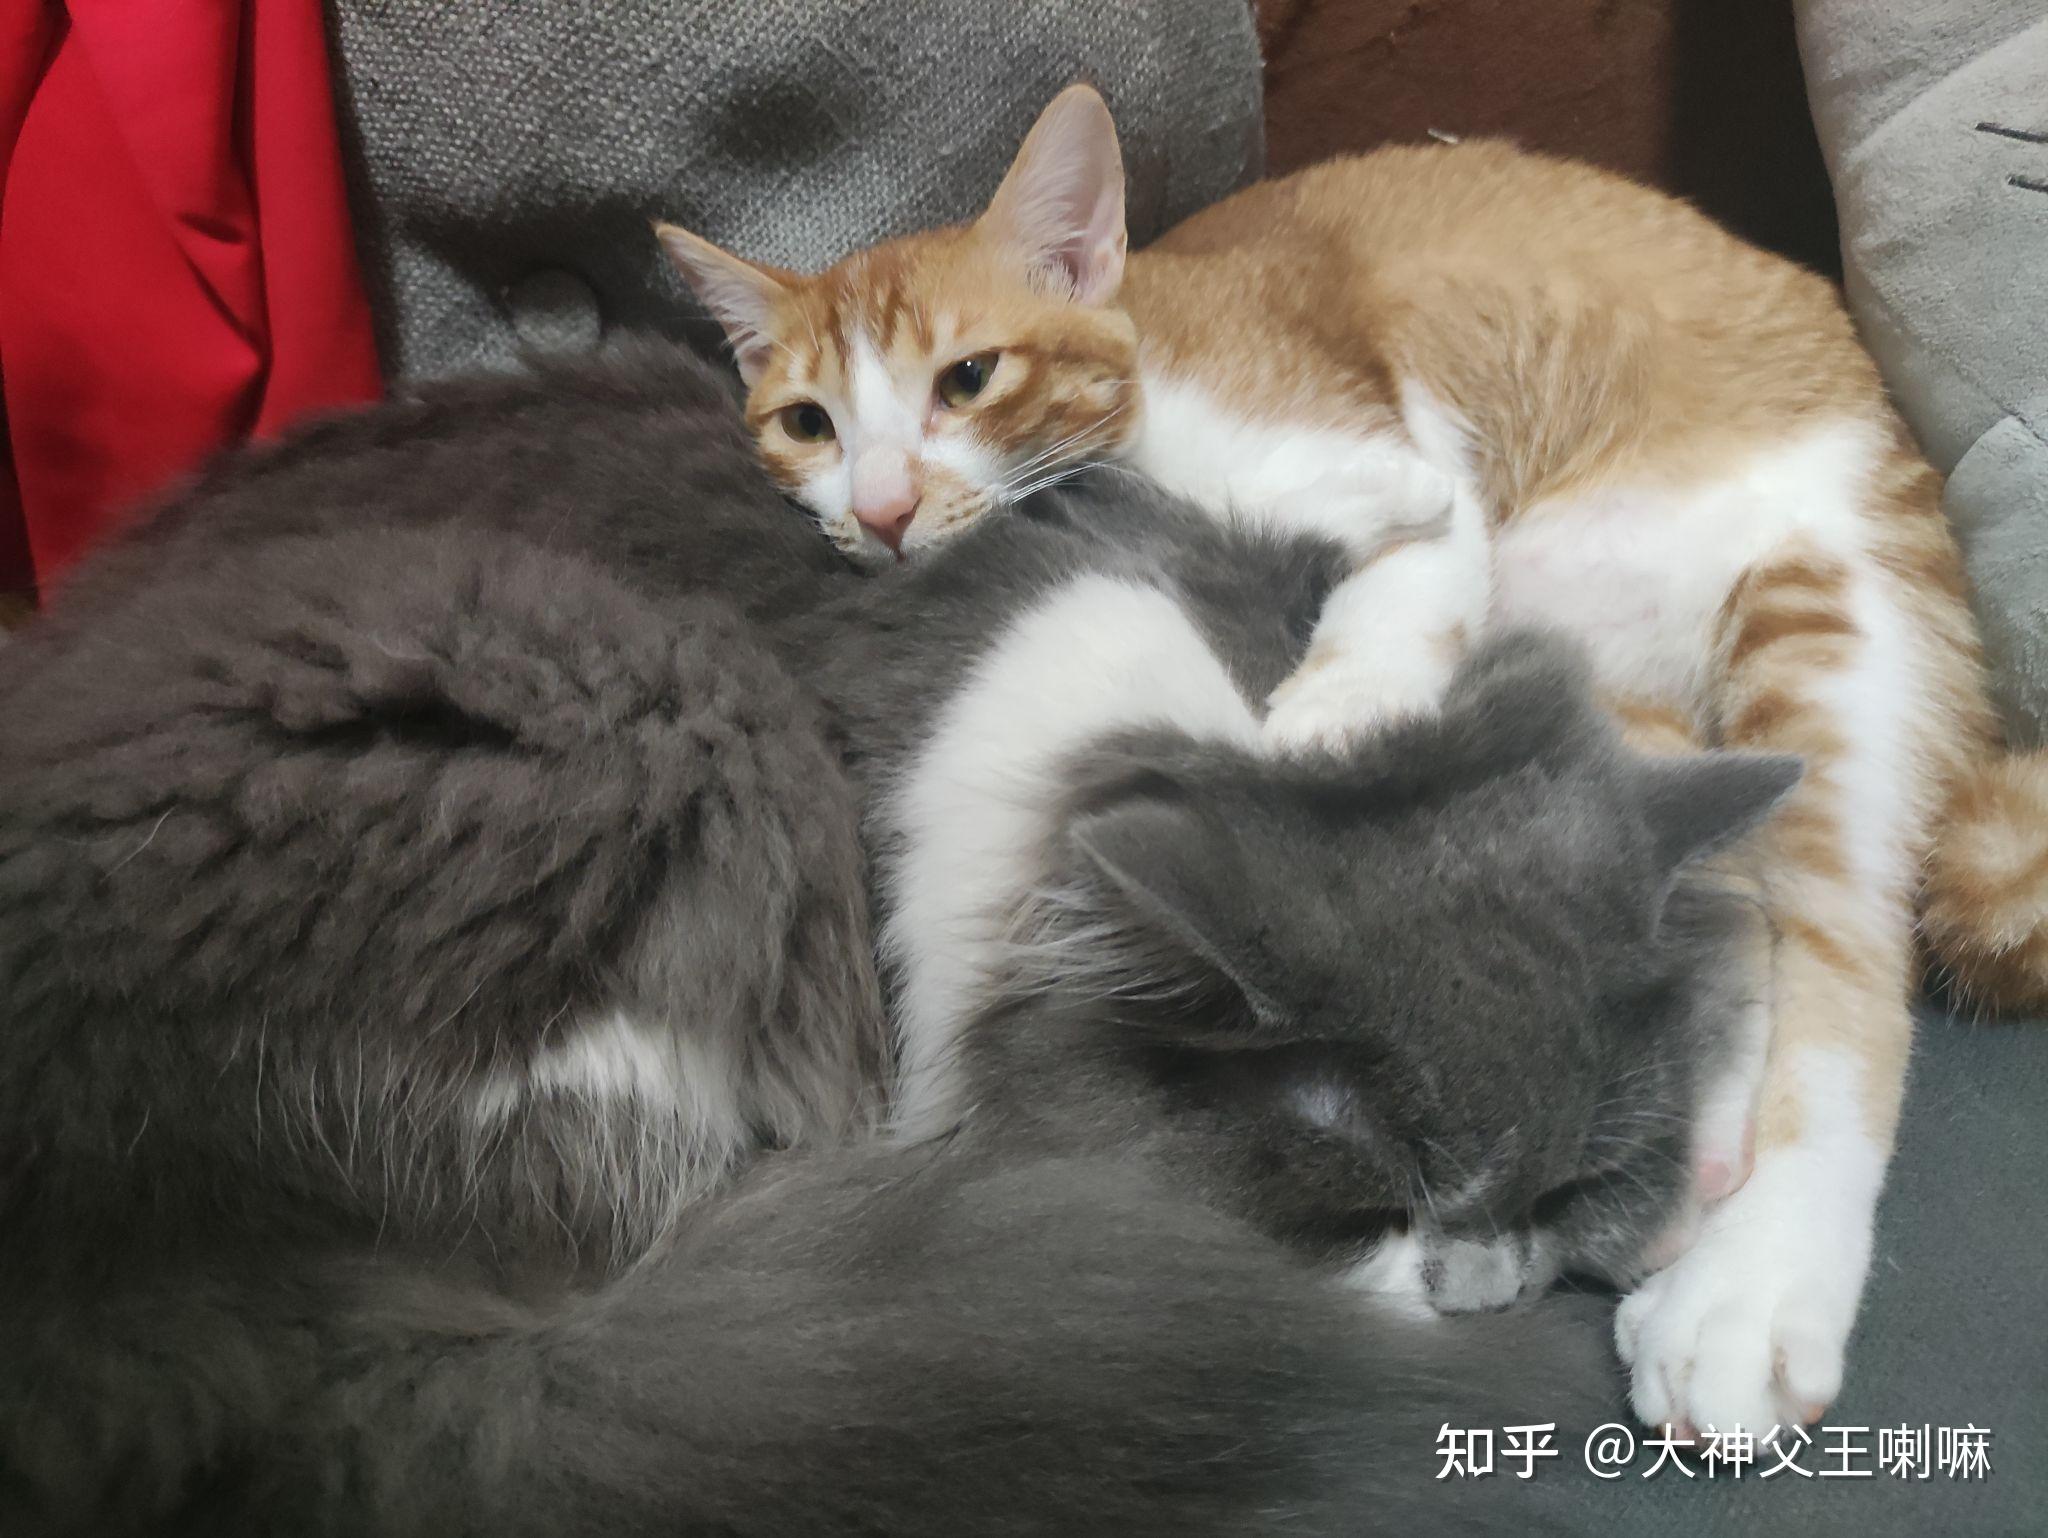 怎么让大猫和新来的小猫和谐相处,一起抱着睡觉? 